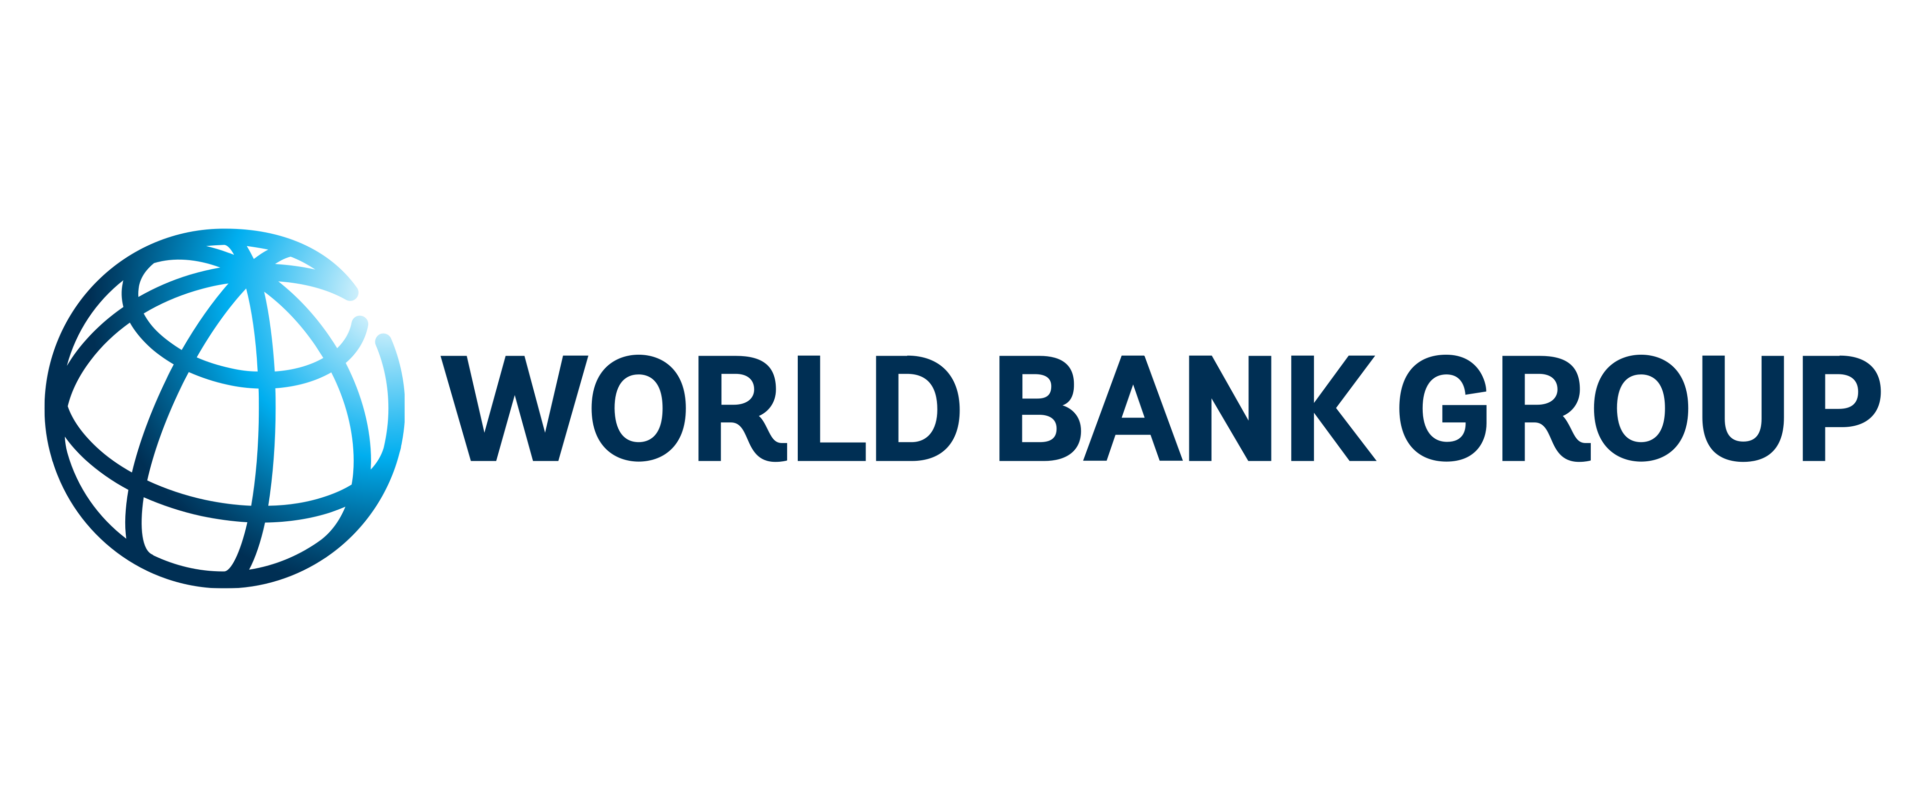 Всемирный банк международная организация. Всемирный банк логотип. Международный банк реконструкции и развития МБРР логотип. Группа Всемирного банка лого. Логотипы Мировых банков.